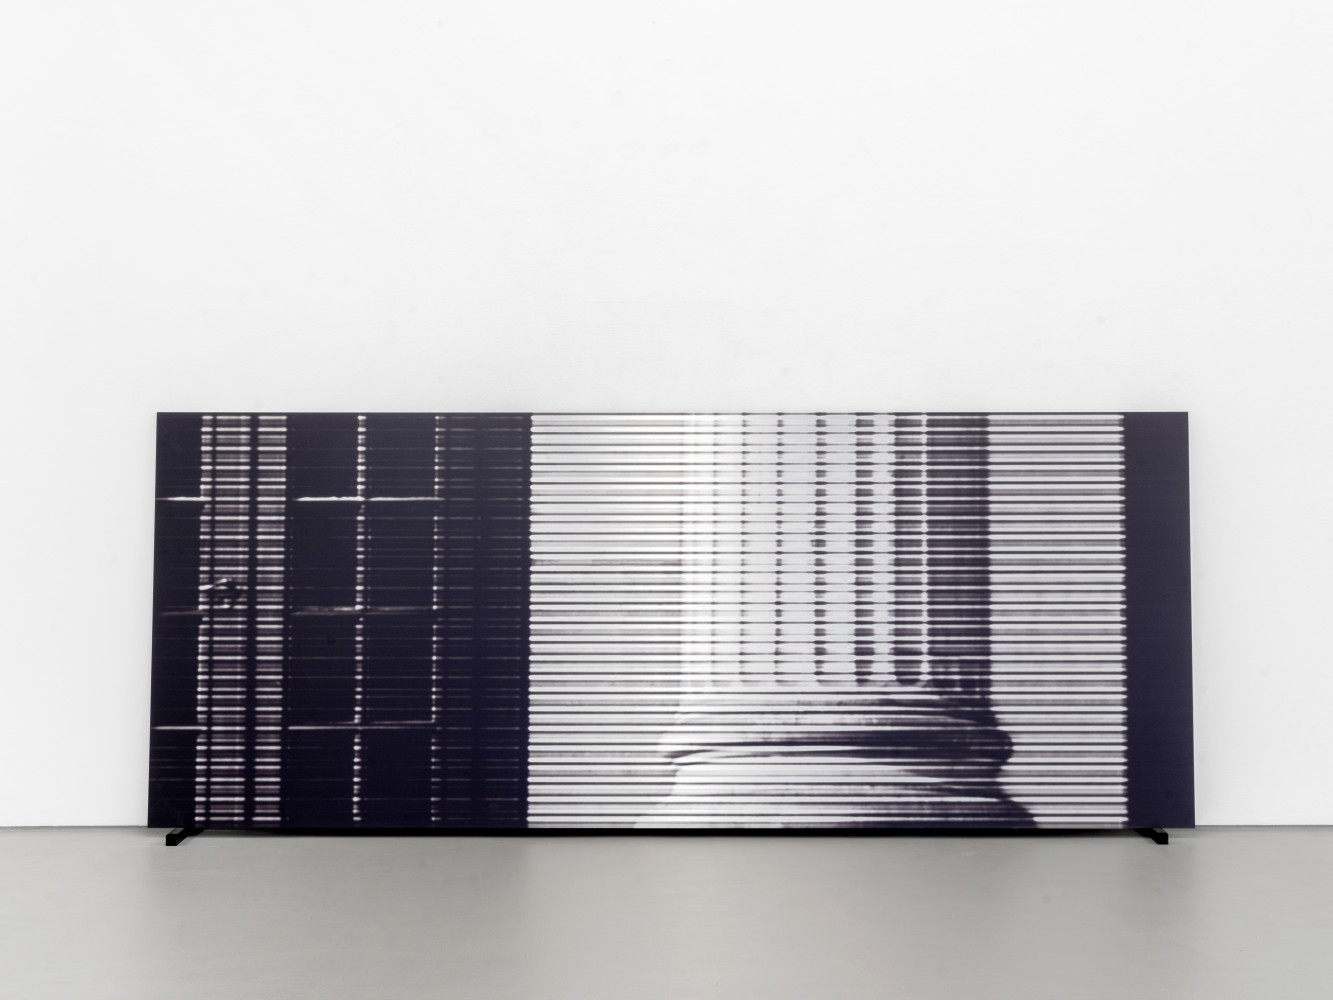 Bettina Pousttchi, ‘Column, 2021 Pigment auf Aluminium / pigment on aluminium ’, 2021, Pigment on aluminium